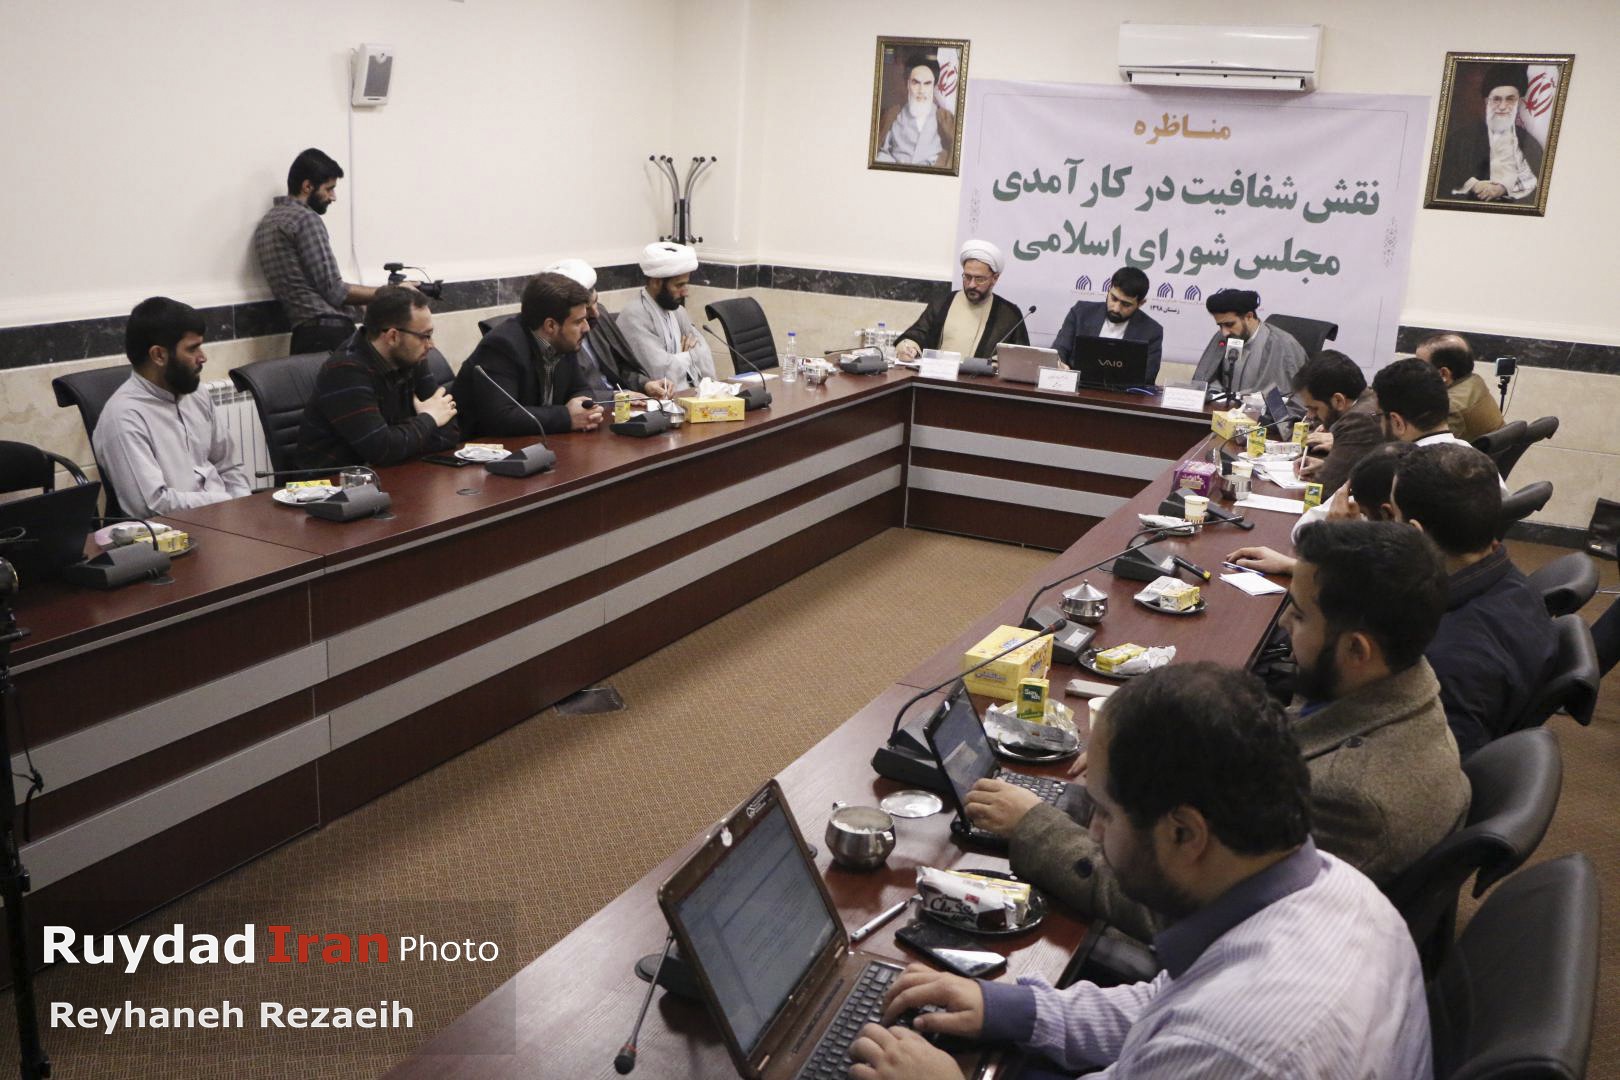 قم|برگزاری مناظره نقش شفافیت در کارآمدی مجلس شورای اسلامی در قم